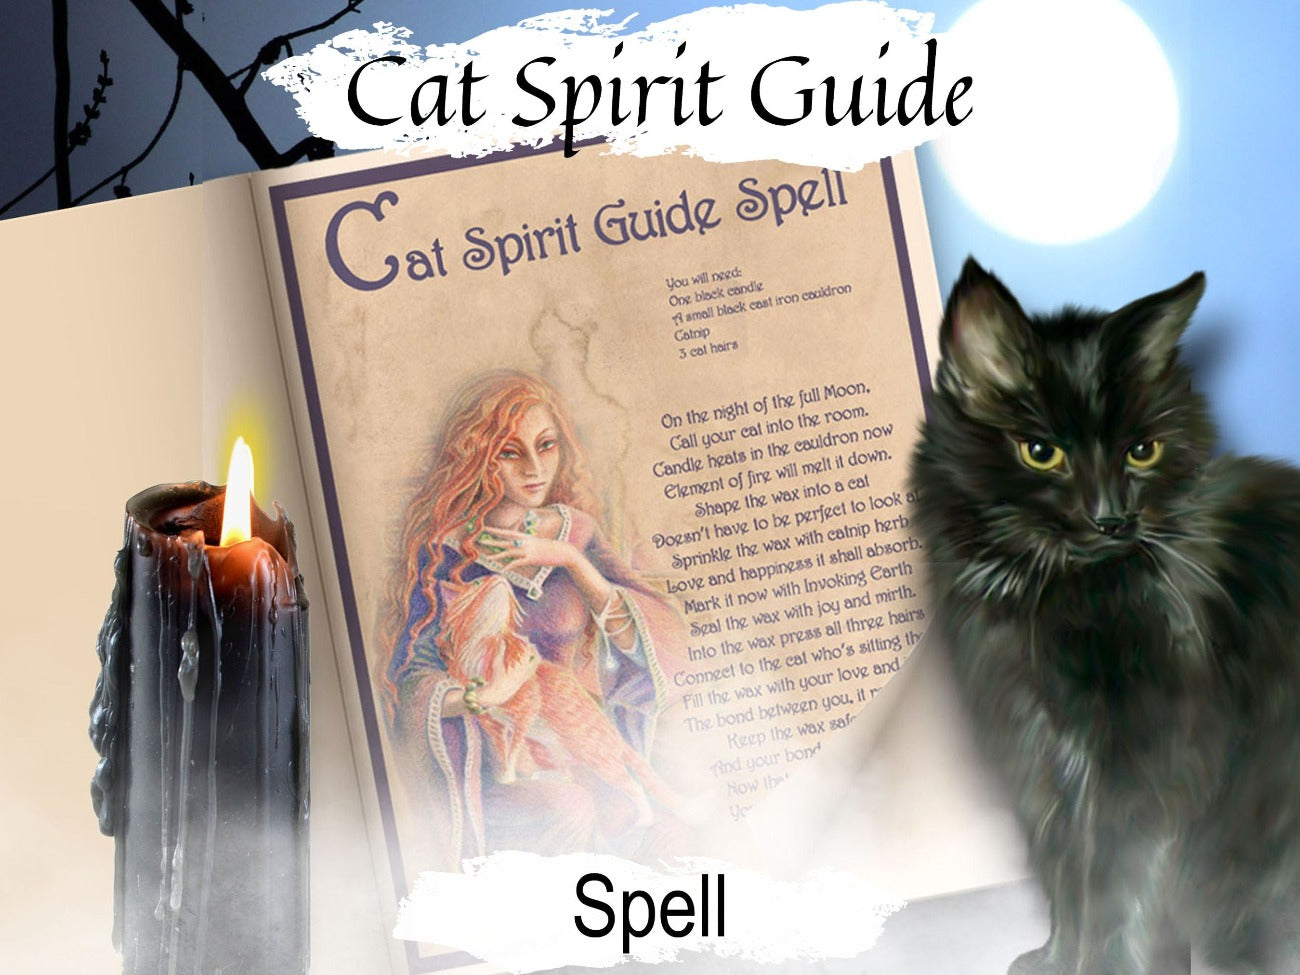 CAT SPIRIT GUIDE, Get a Cat Spiritual Helper, Cat Familiar, Wicca Witch Cat Spell Magic, Pet Ritual, Witchcraft Cat Spirit Helper Guide - Morgana Magick Spell